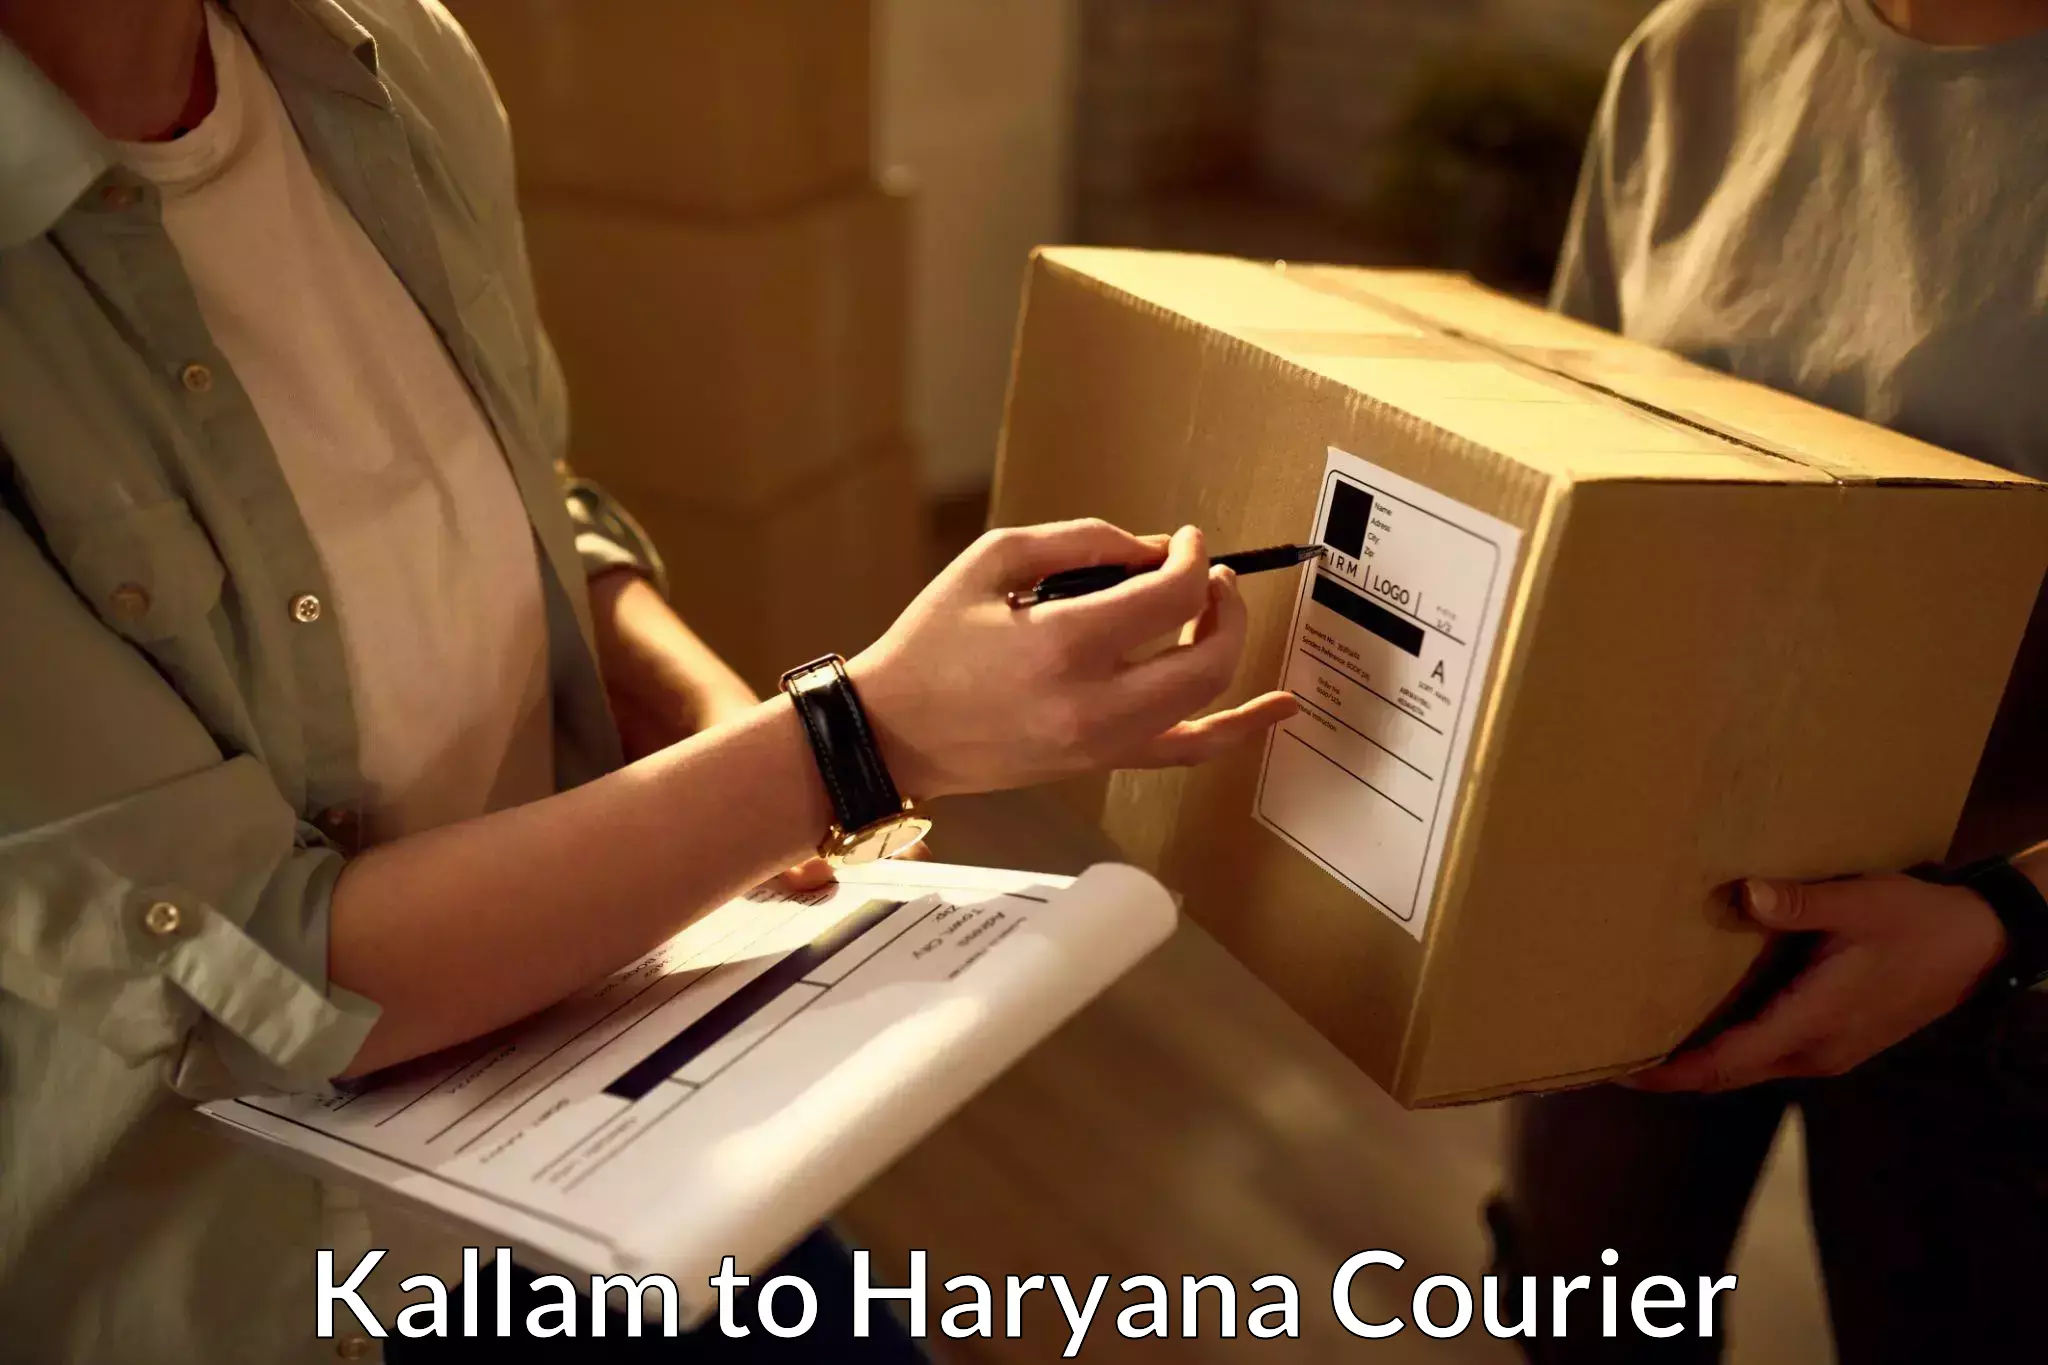 User-friendly delivery service Kallam to Taraori